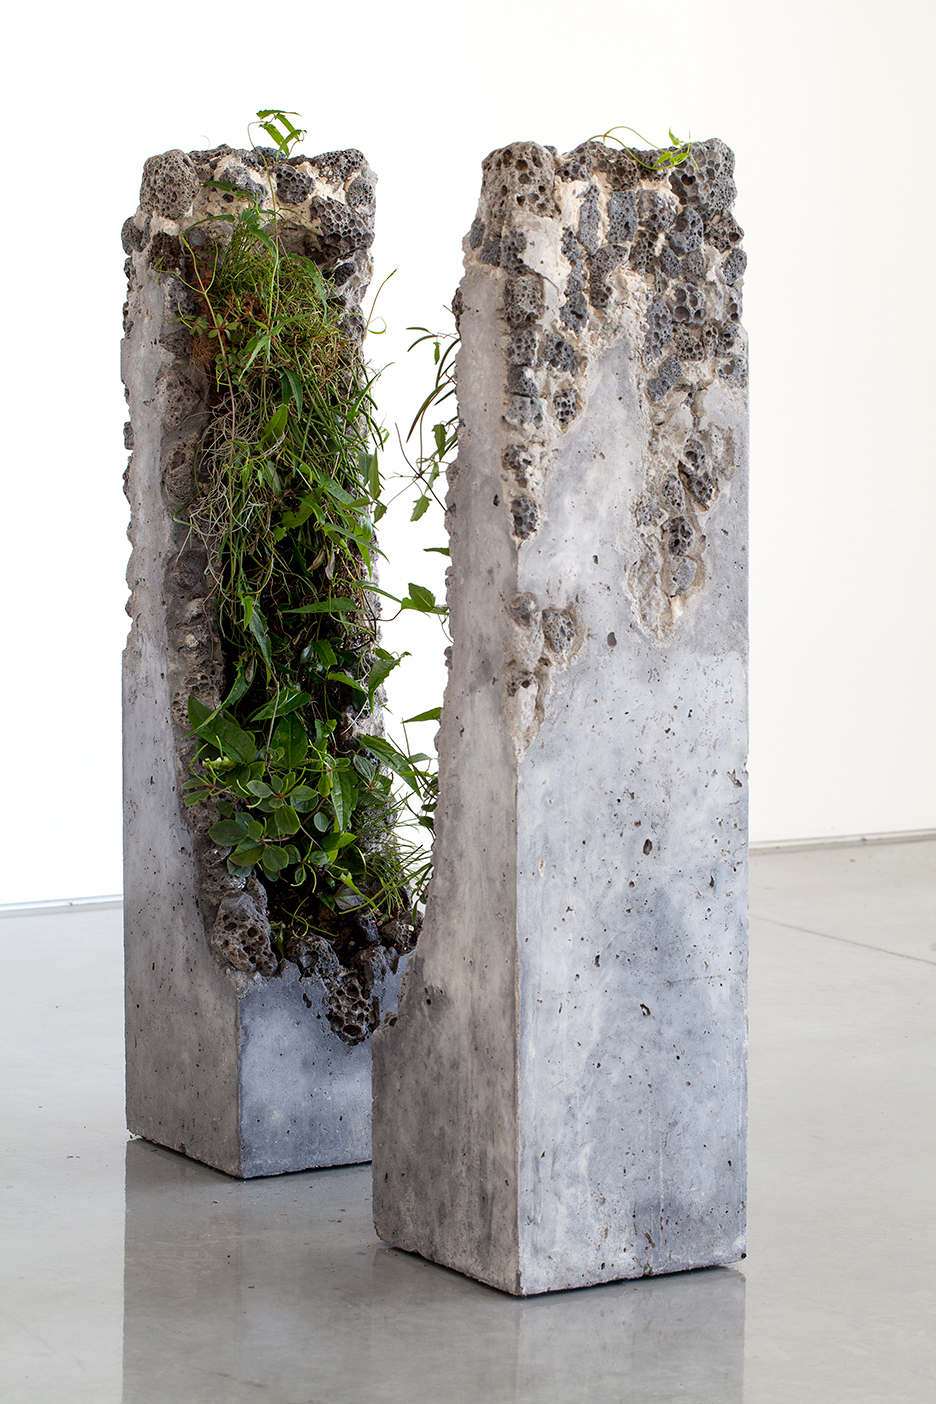 Adobe Portfolio sculpture concrete plants photograph